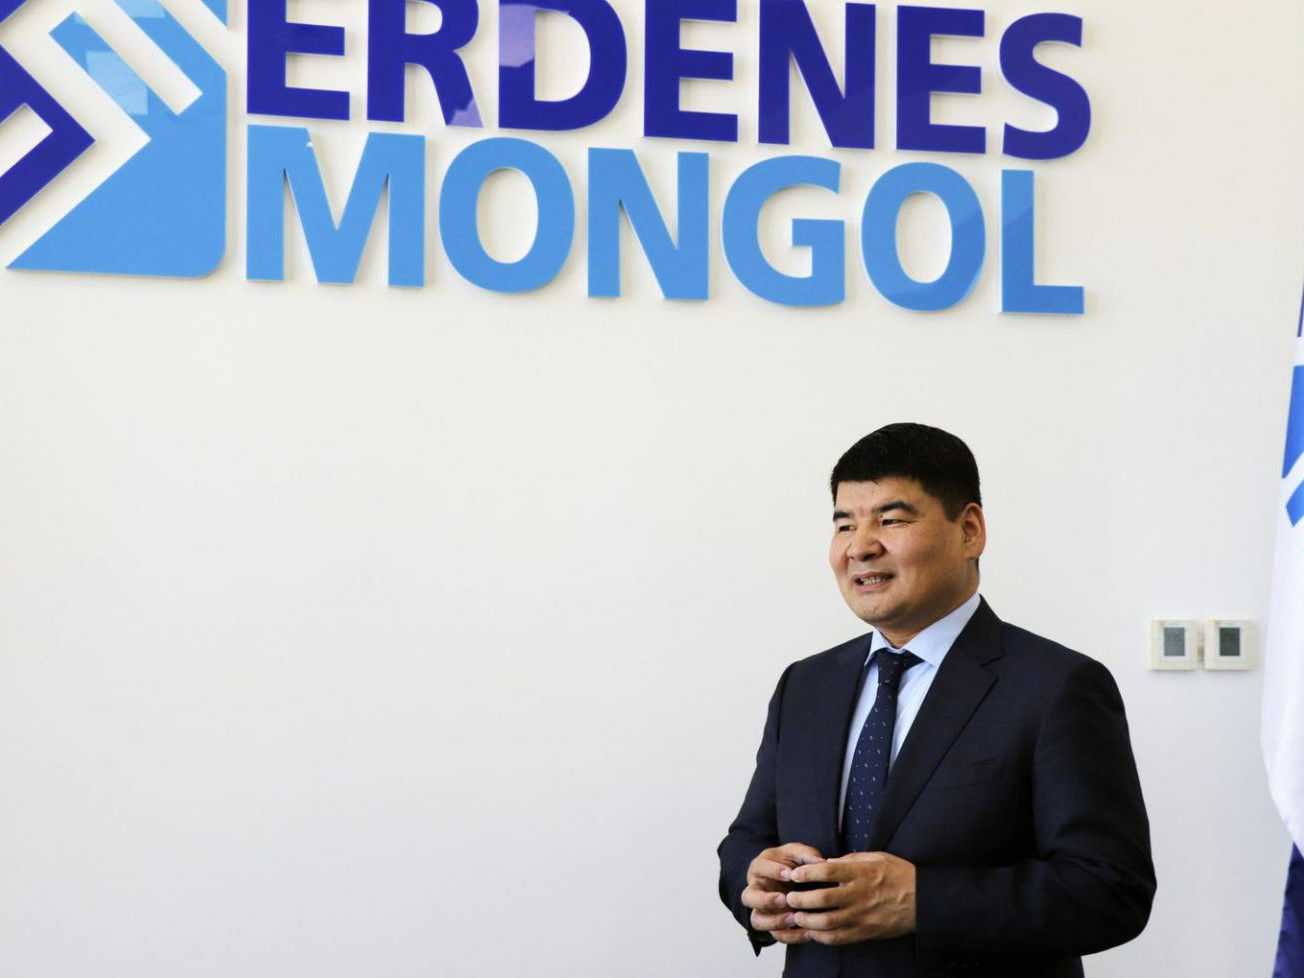 П.Ганхүү: “ЭРДЭНЭС МОНГОЛ” бол монголын уул уурхайн хамгийн том холдинг компани гэсэн эхний мэссэж дэлхийд хүрсэн